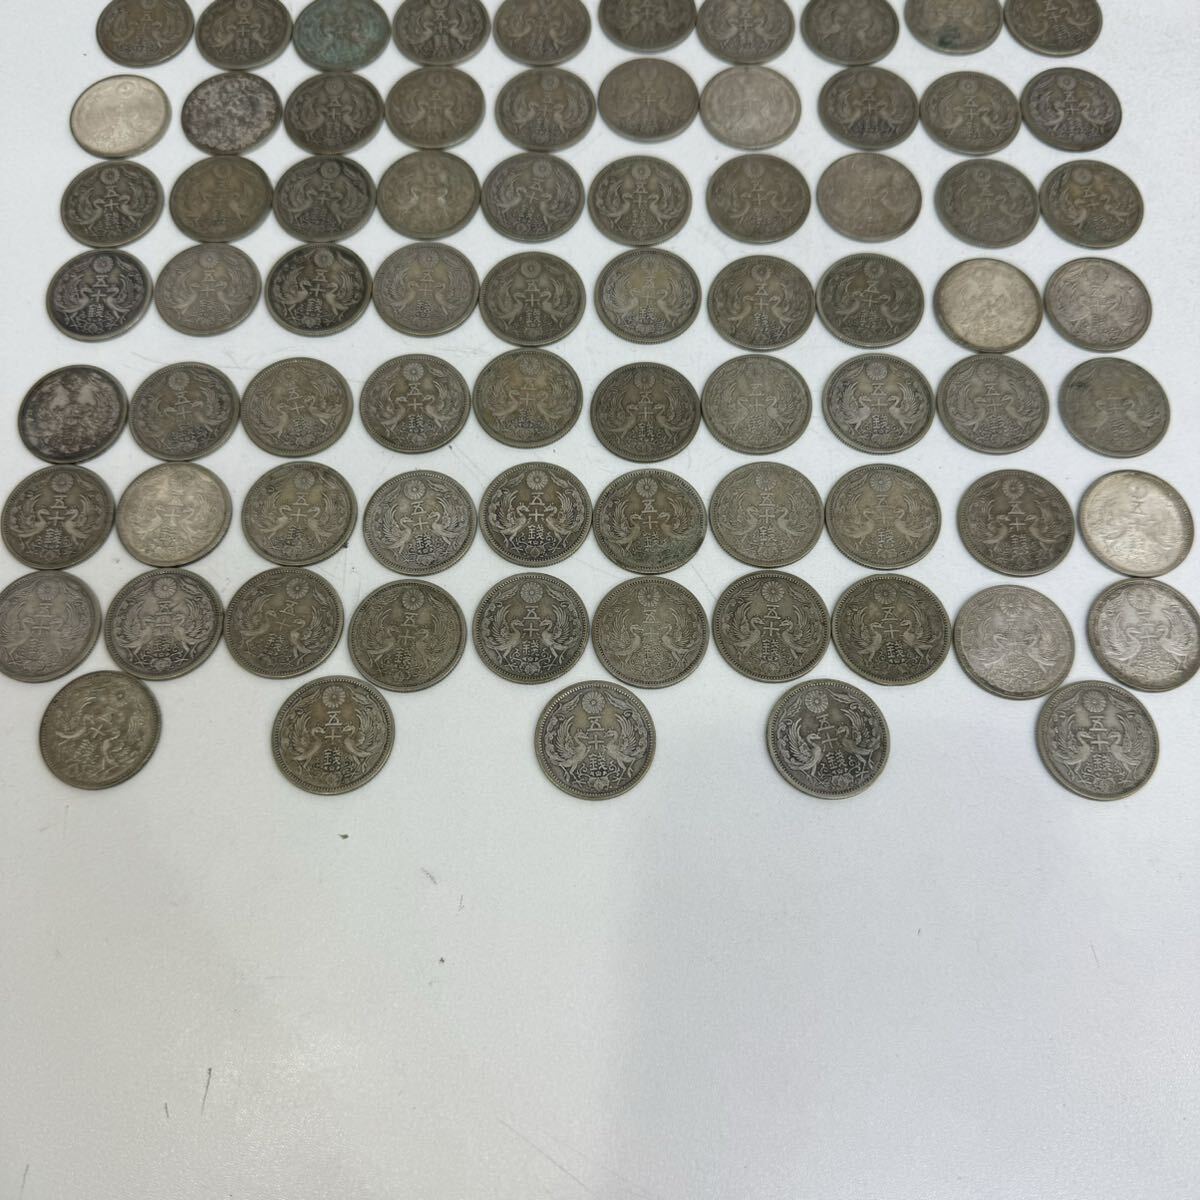 [TC0426]. 10 sen silver coin summarize set 50 sen 95 sheets coin money coin old coin Japan Japan Taisho Showa era 13 year collection history rare?